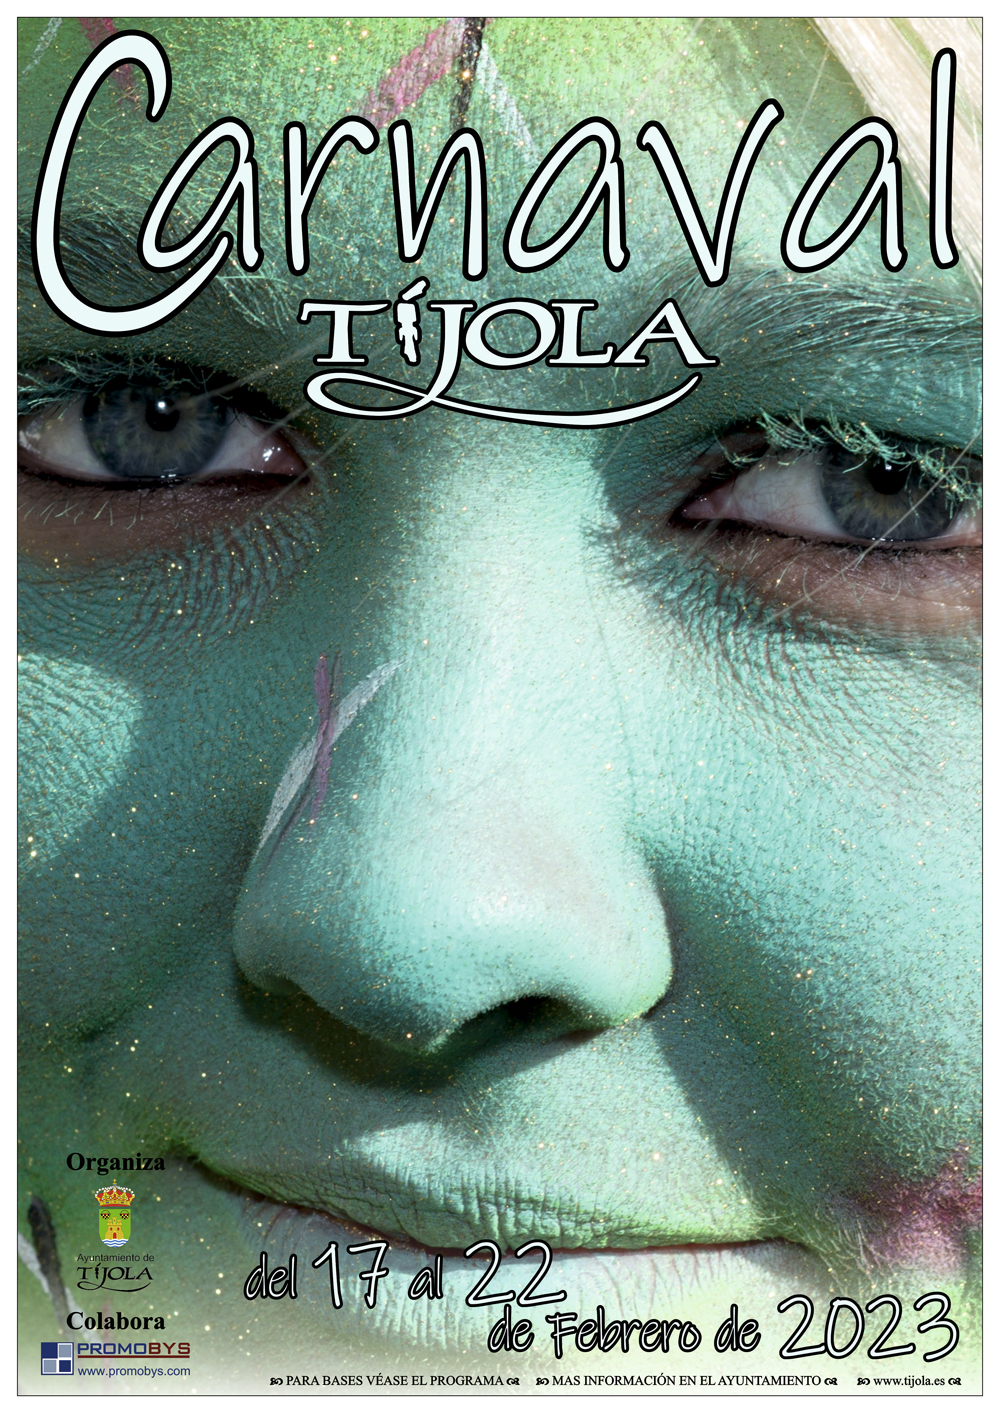 Imagen del Cartel anunciador del Carnaval 2023. Imagen de una mujer rubia maquillada de color verde, primer plano de solo ojos, nariz y boca.